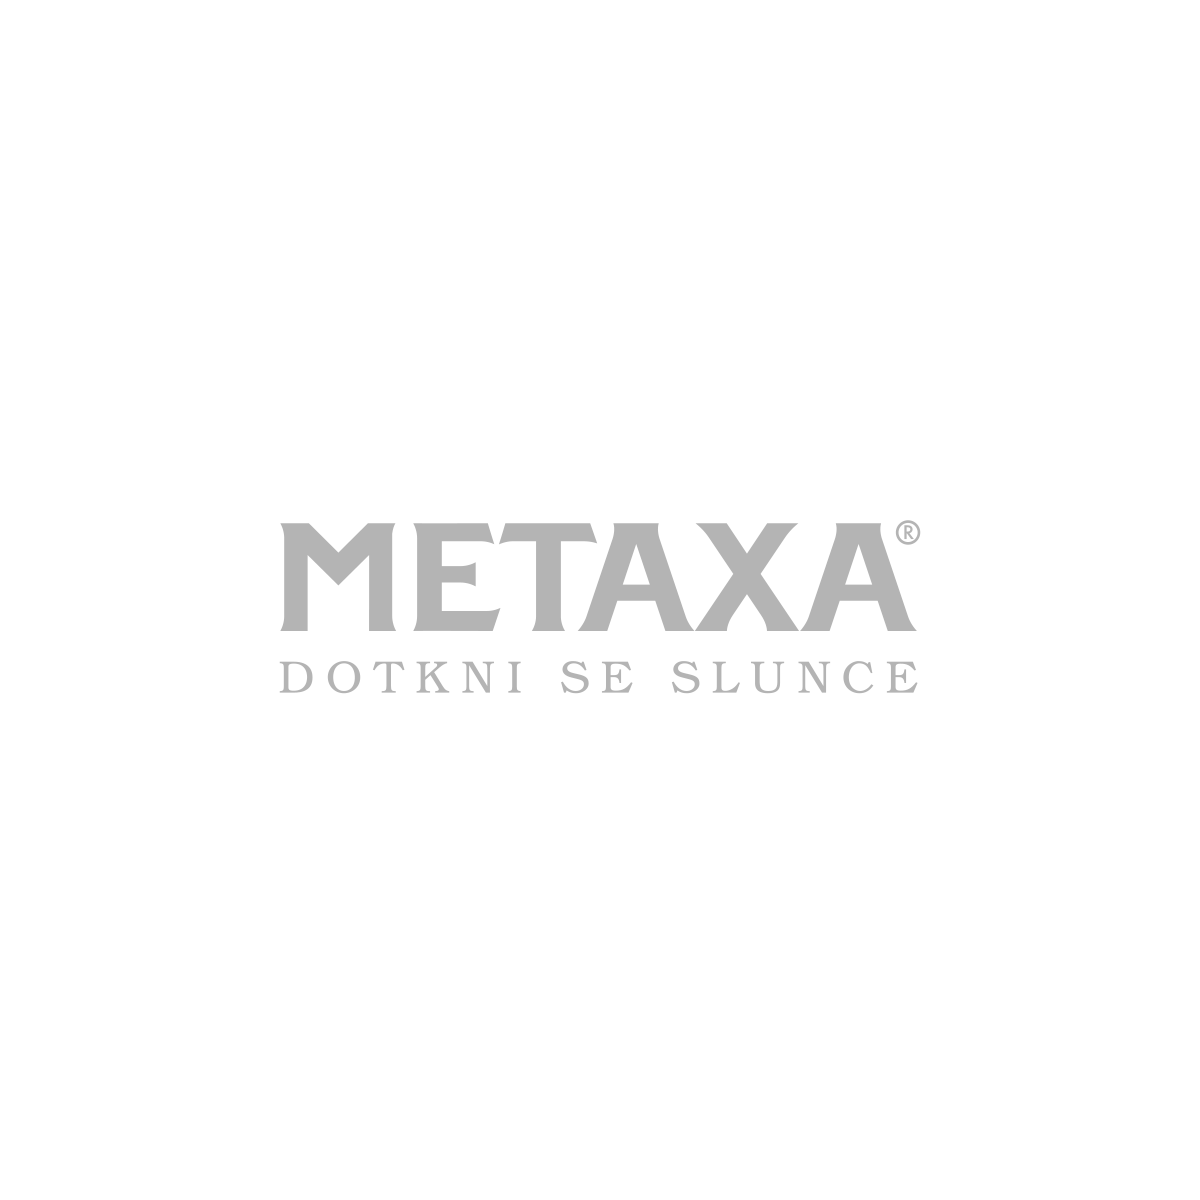 [klienti/Metaxa.png]